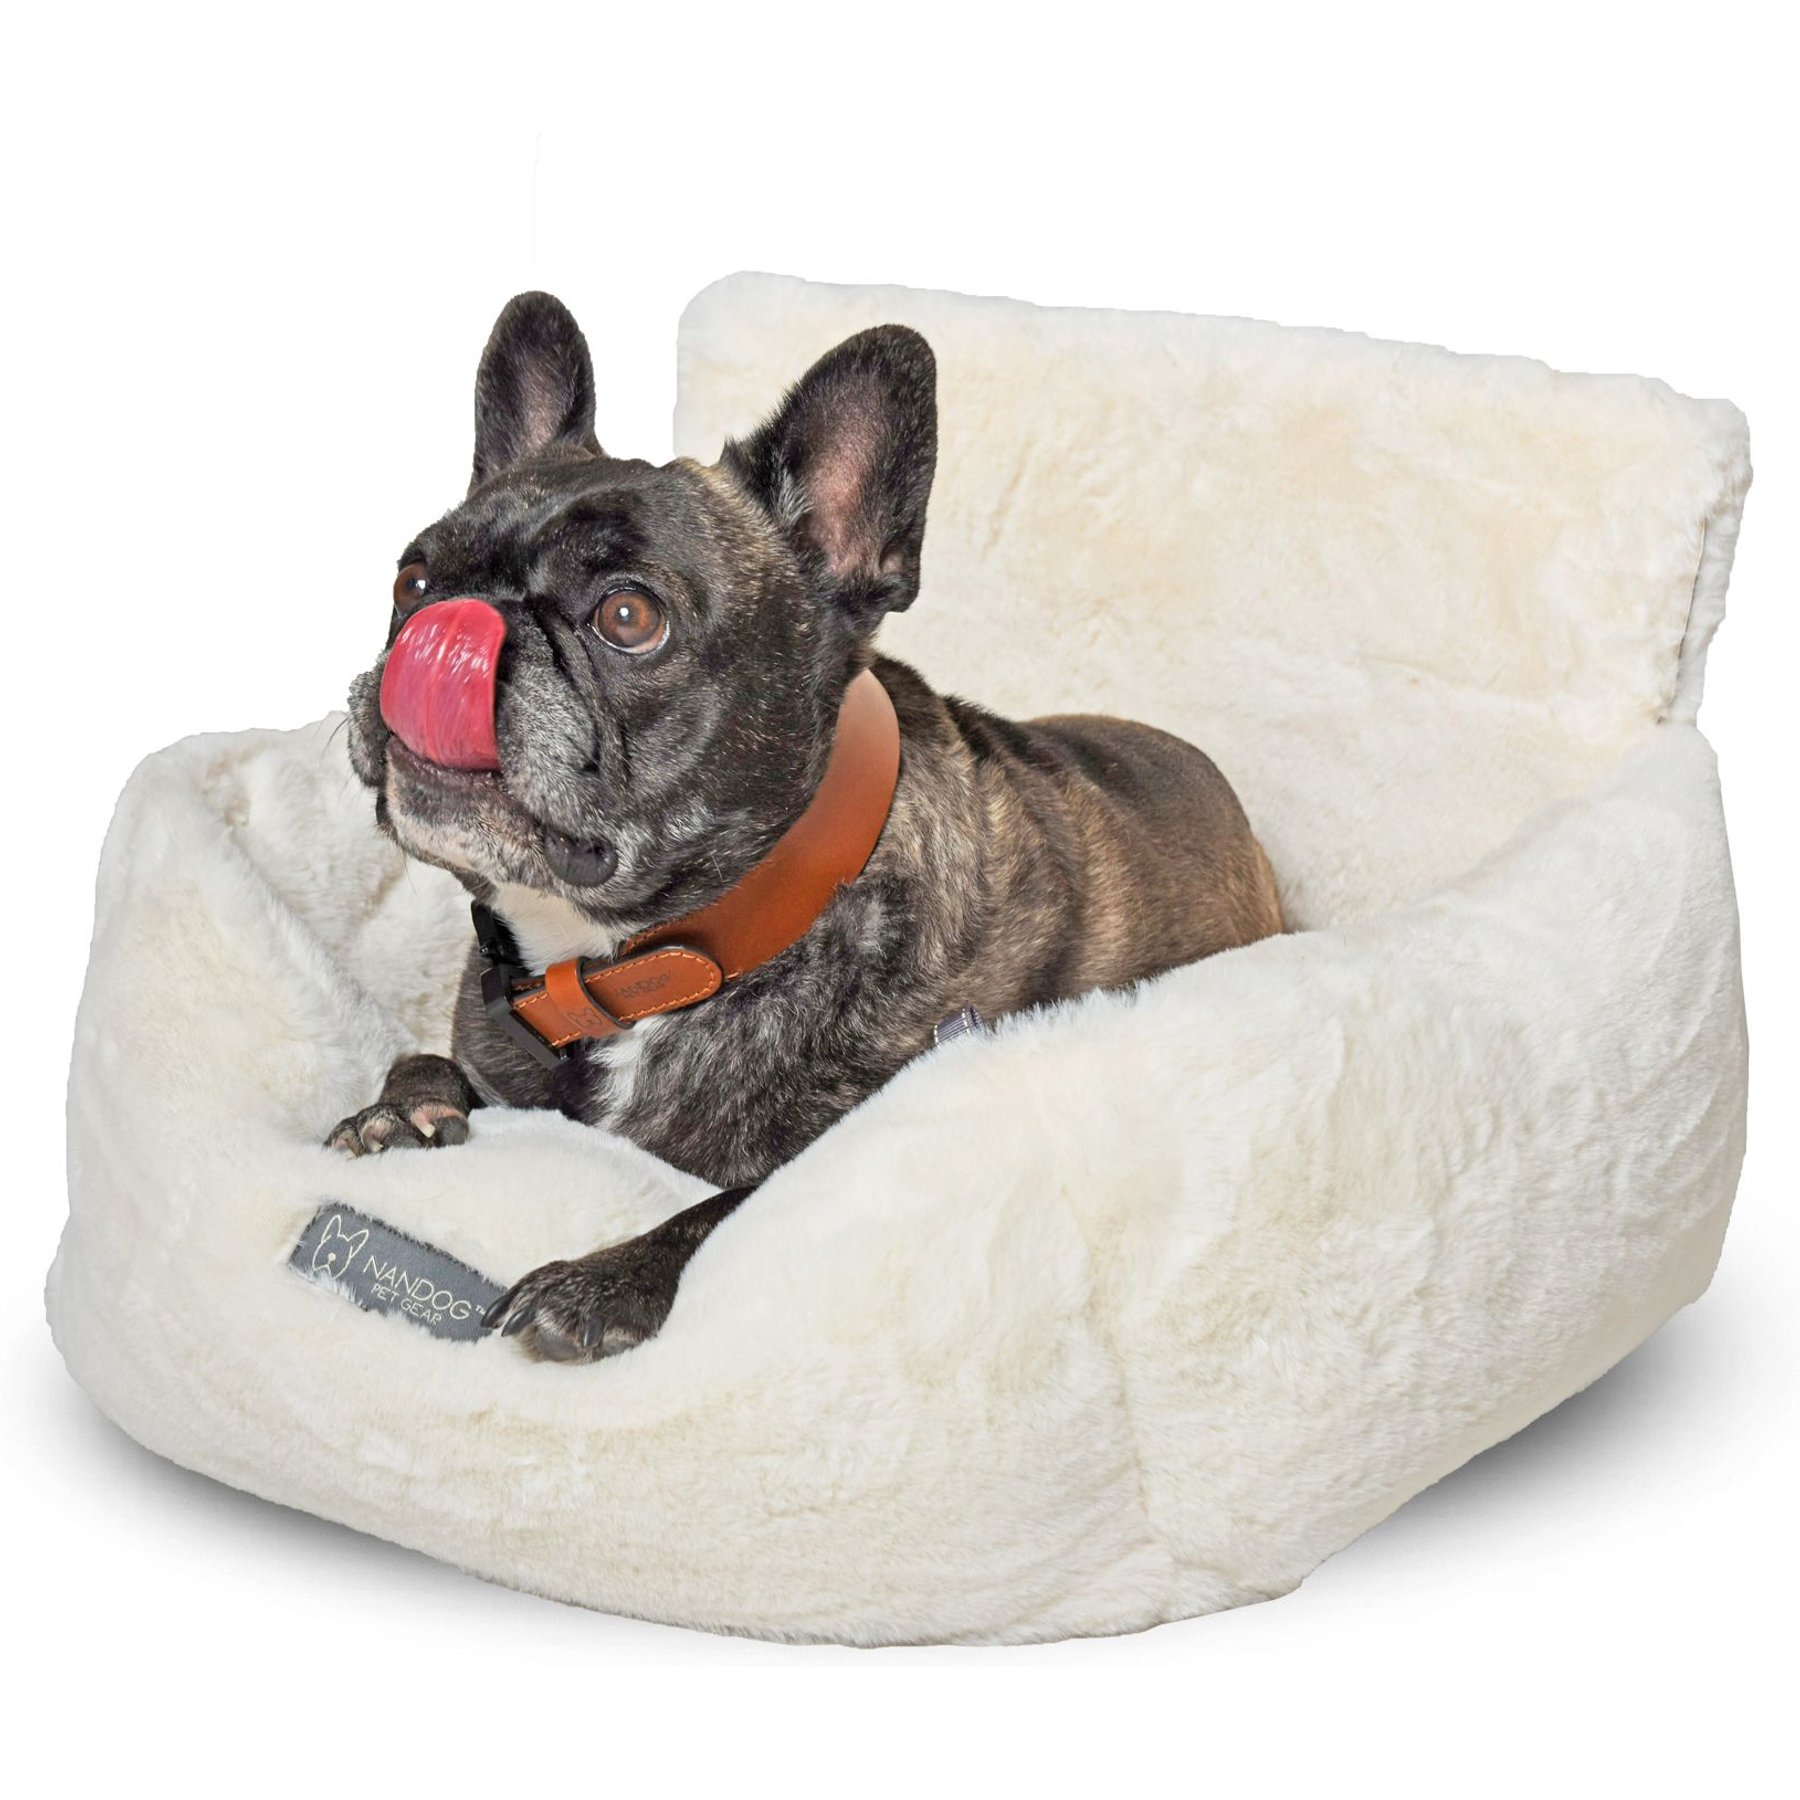 Dog Cat Beds, Car Seat, Toys - #1 Pet Store Nandog Pet Gear – Nandog Pet  Gear™